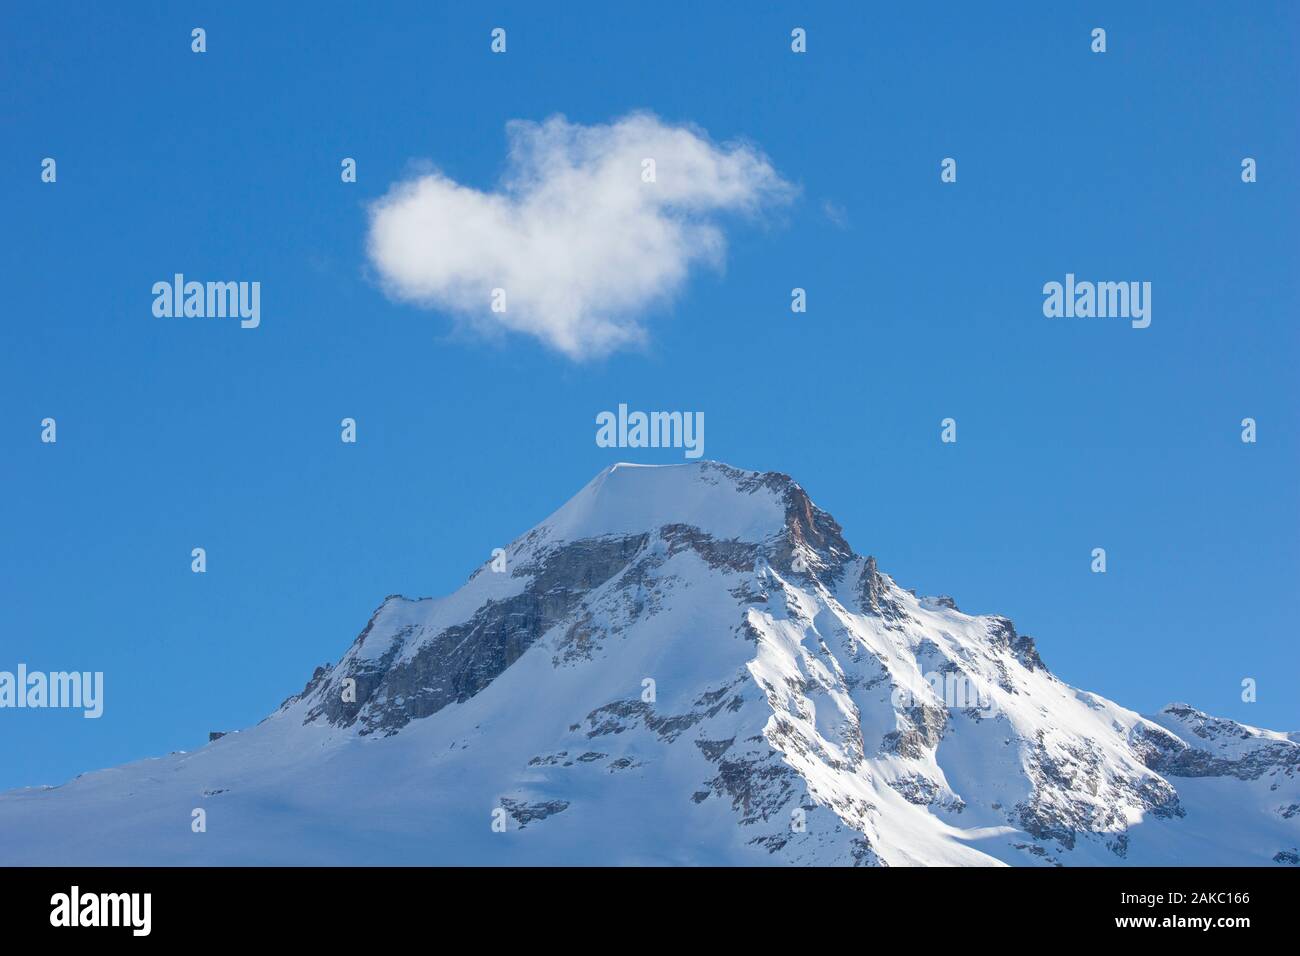 Weiße Wolke über verschneite Berggipfel/Pinnacle Ciarforon im Winter im Massiv des Gran Paradiso Graian Alps, Aostatal, Italien Stockfoto